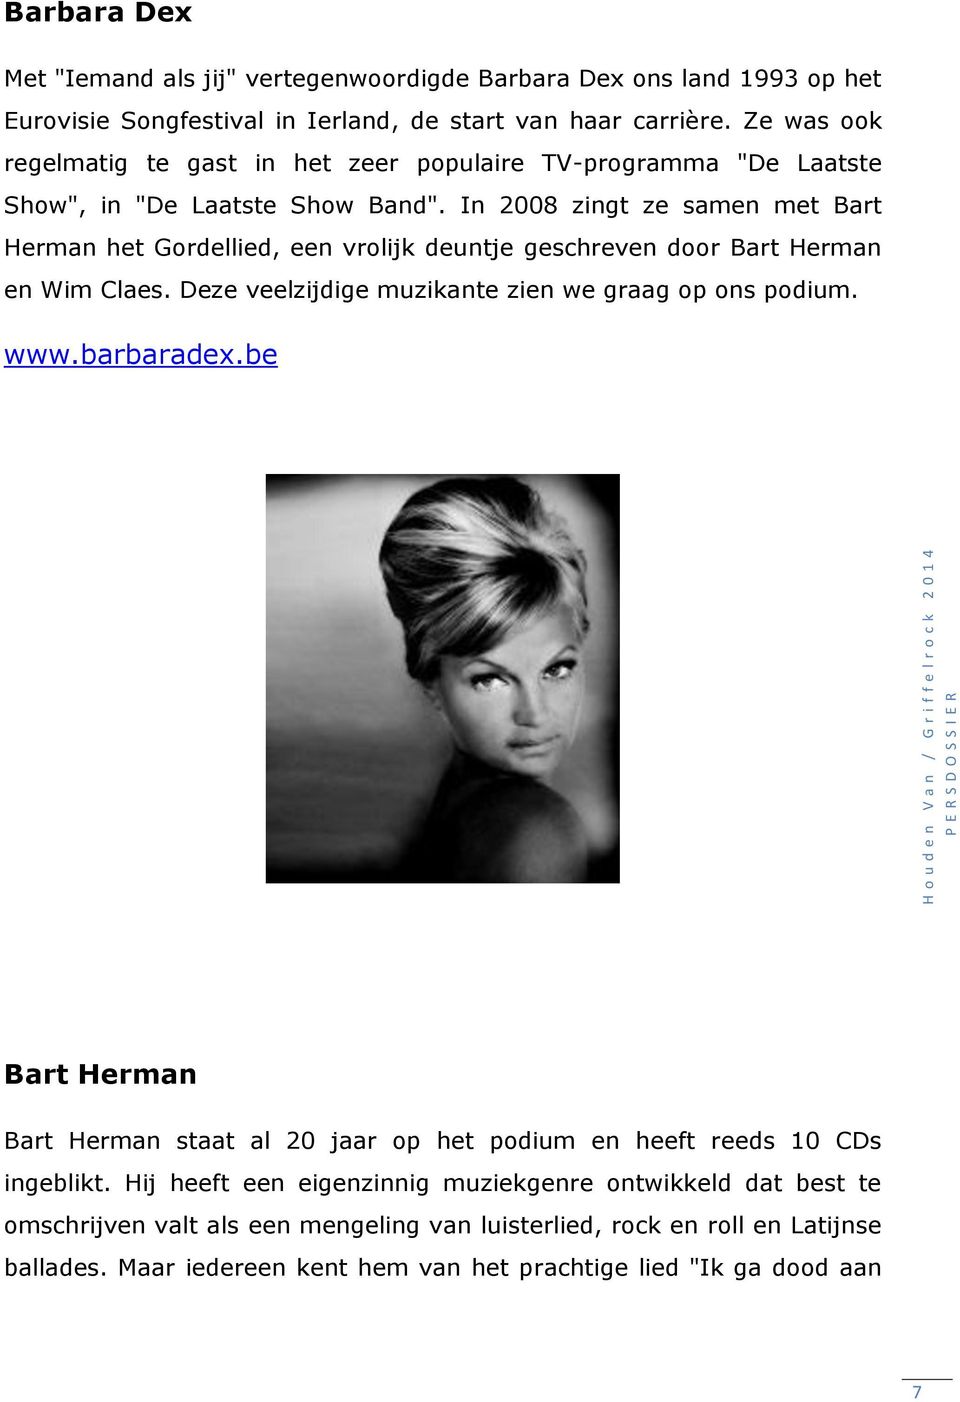 In 2008 zingt ze samen met Bart Herman het Gordellied, een vrolijk deuntje geschreven door Bart Herman en Wim Claes. Deze veelzijdige muzikante zien we graag op ons podium. www.